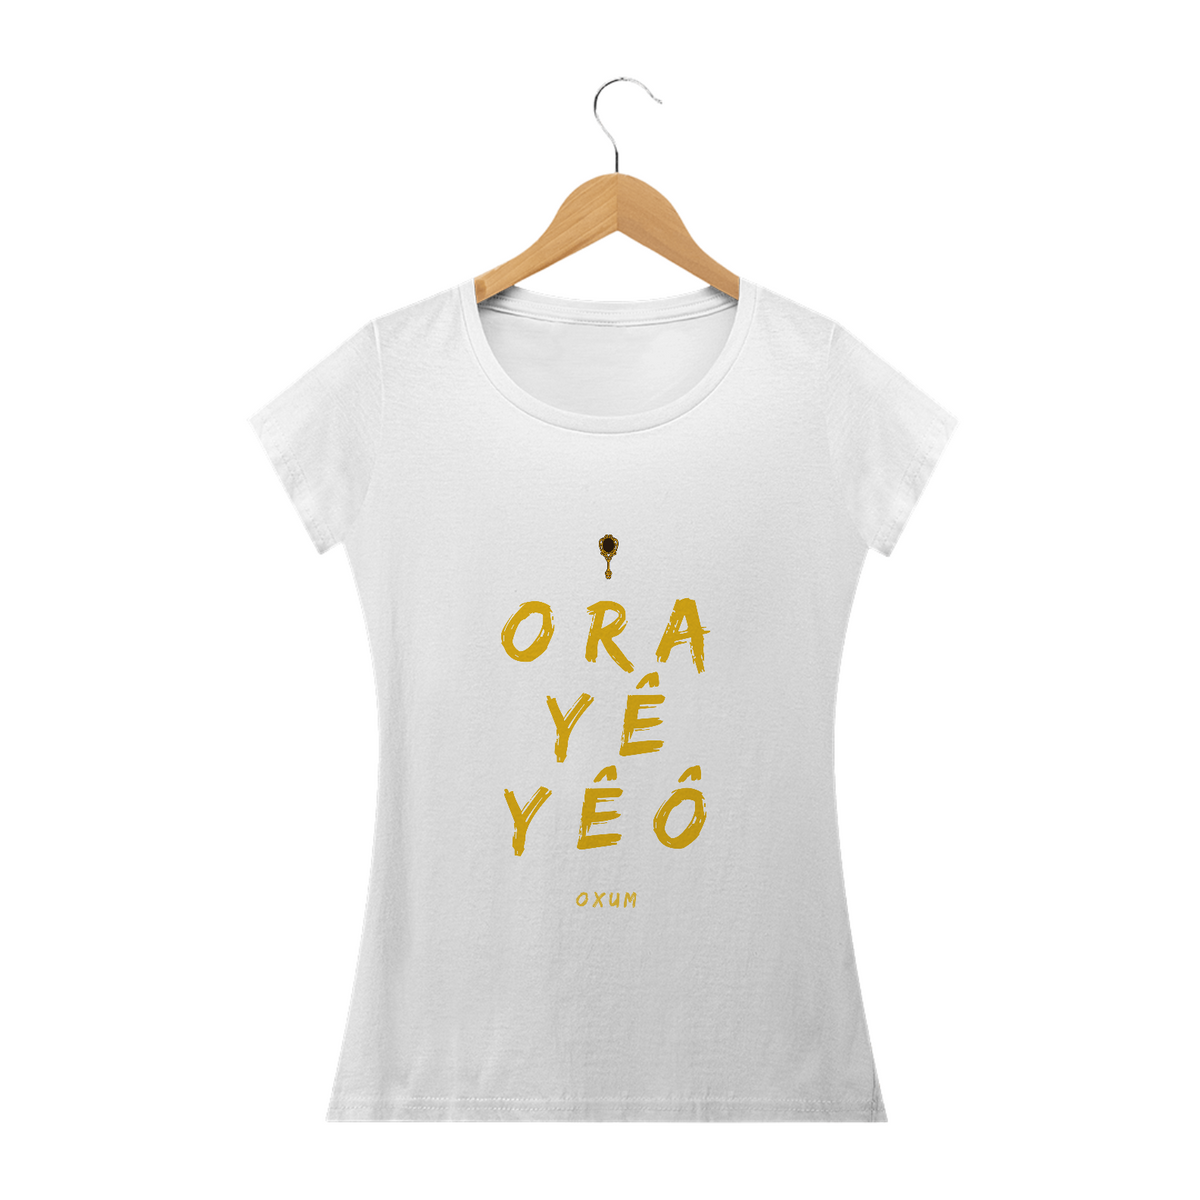 Nome do produto: Camiseta Feminina Osun Oxum - Saudação Òóré Yéyé Osun